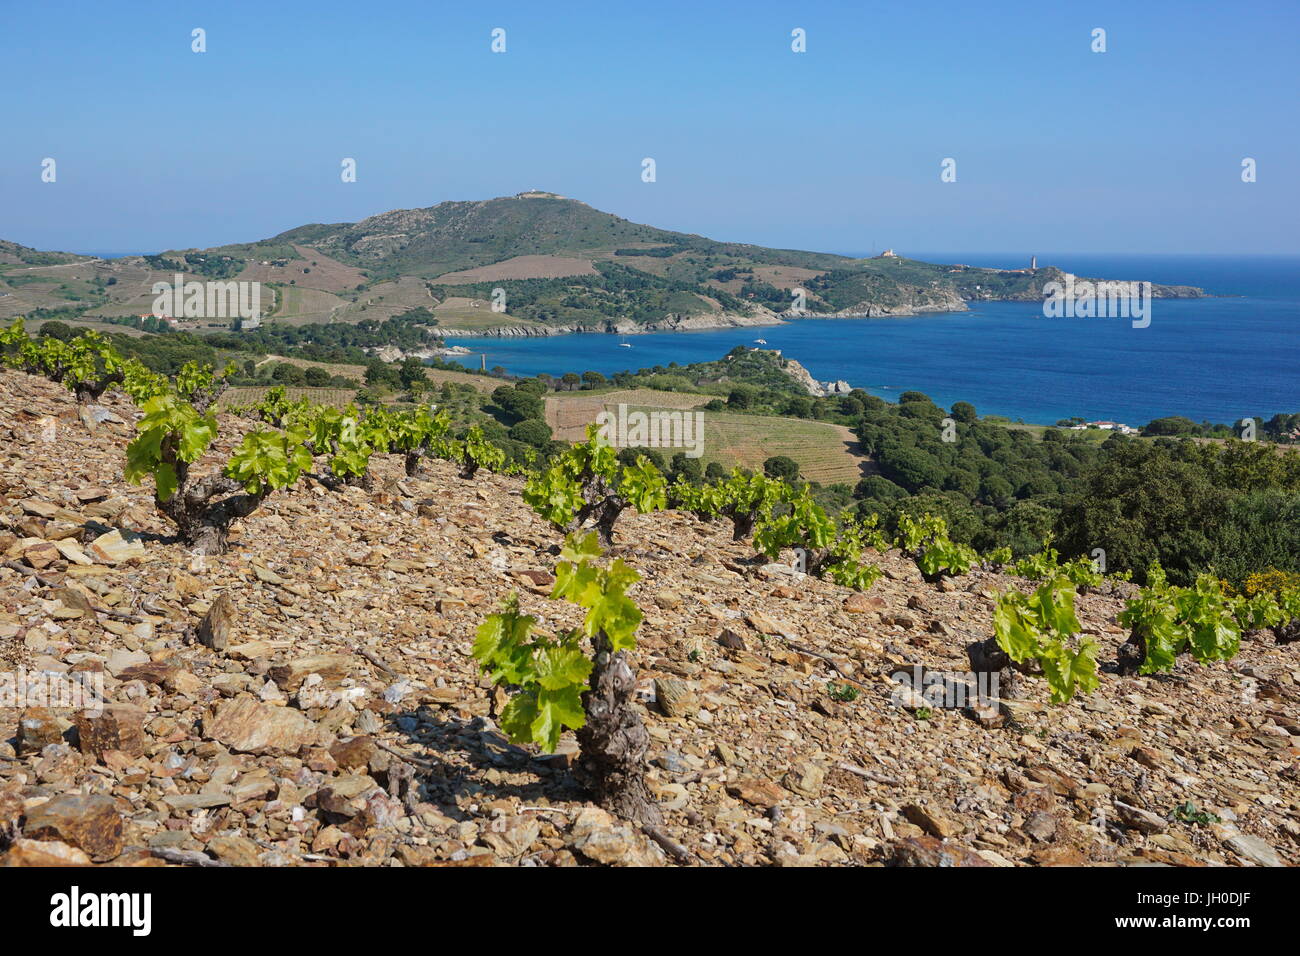 El paisaje costero campo de la viña y la bahía de Paulilles, el mar Mediterráneo, al sur de Francia, Pirineos Orientales, Rosellón, Côte Vermeille Foto de stock